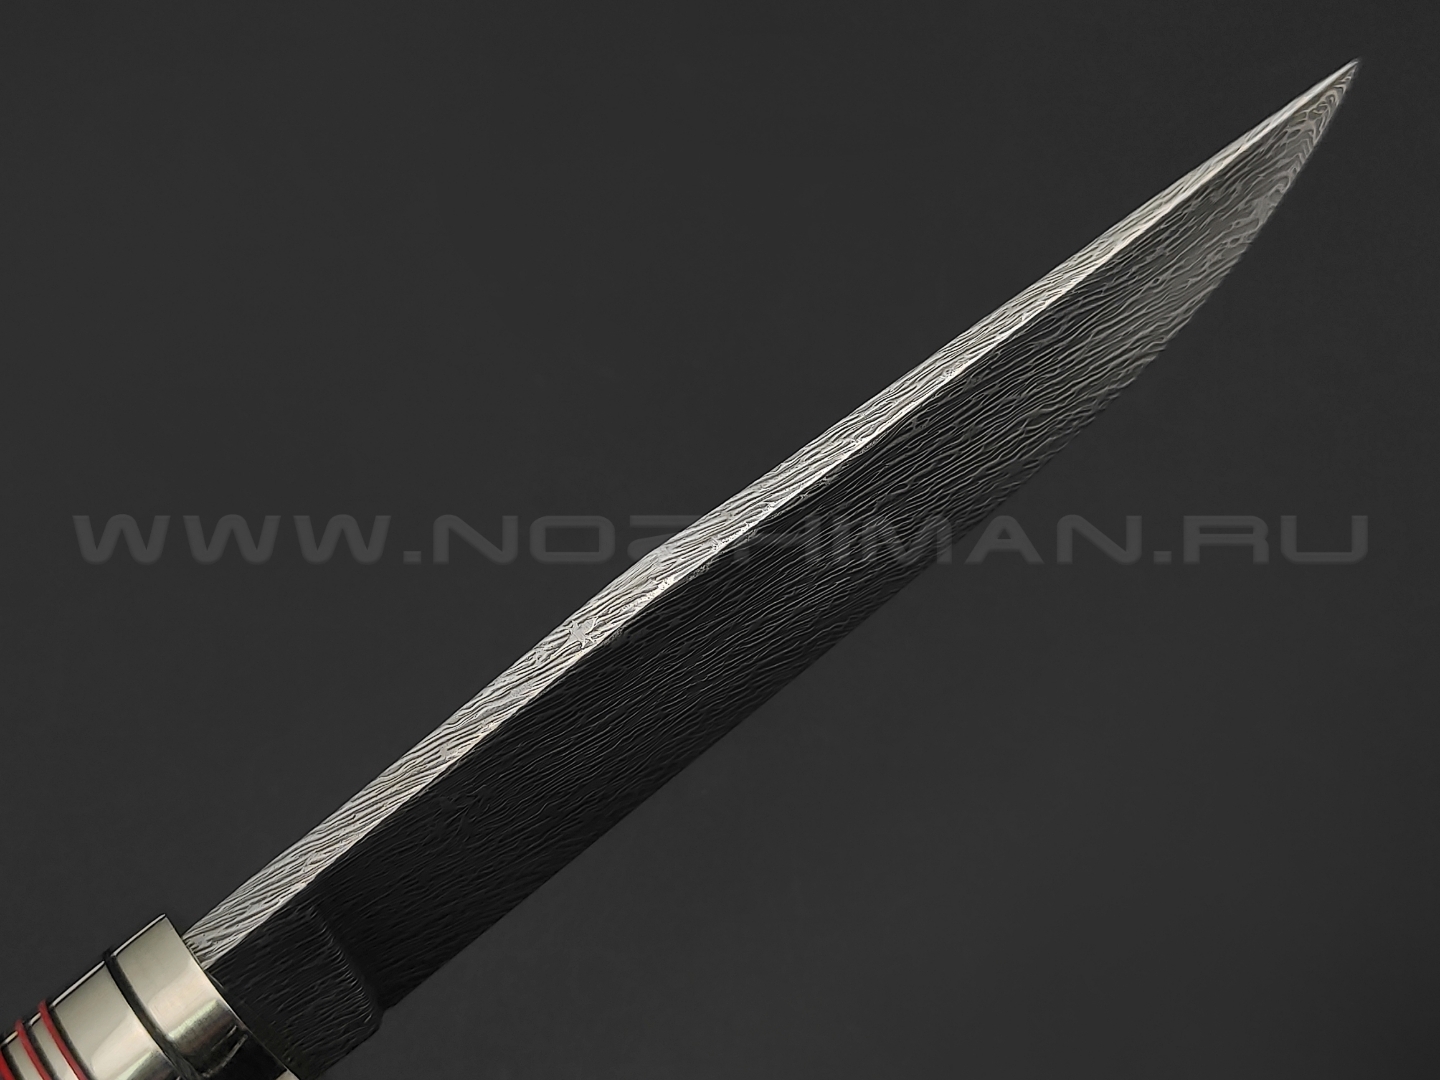 Волчий Век нож "Слоник" Custom сталь M390 WA дамаскаж, рукоять композит, нейзильбер